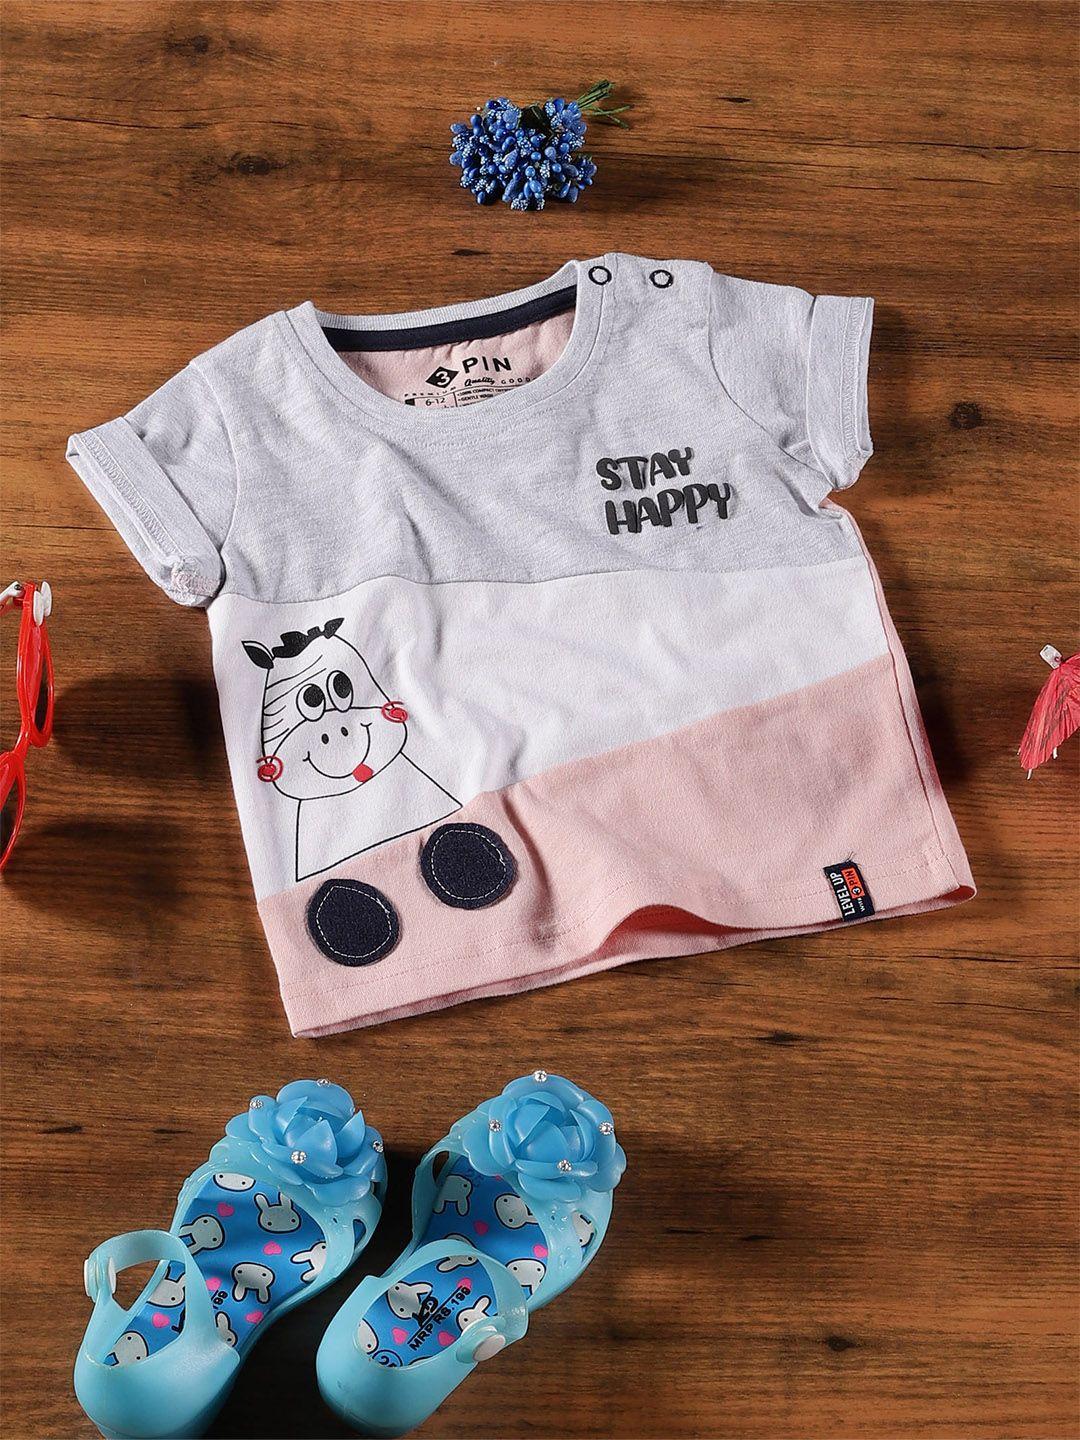 3pin infant boys colourblocked applique cotton t-shirt